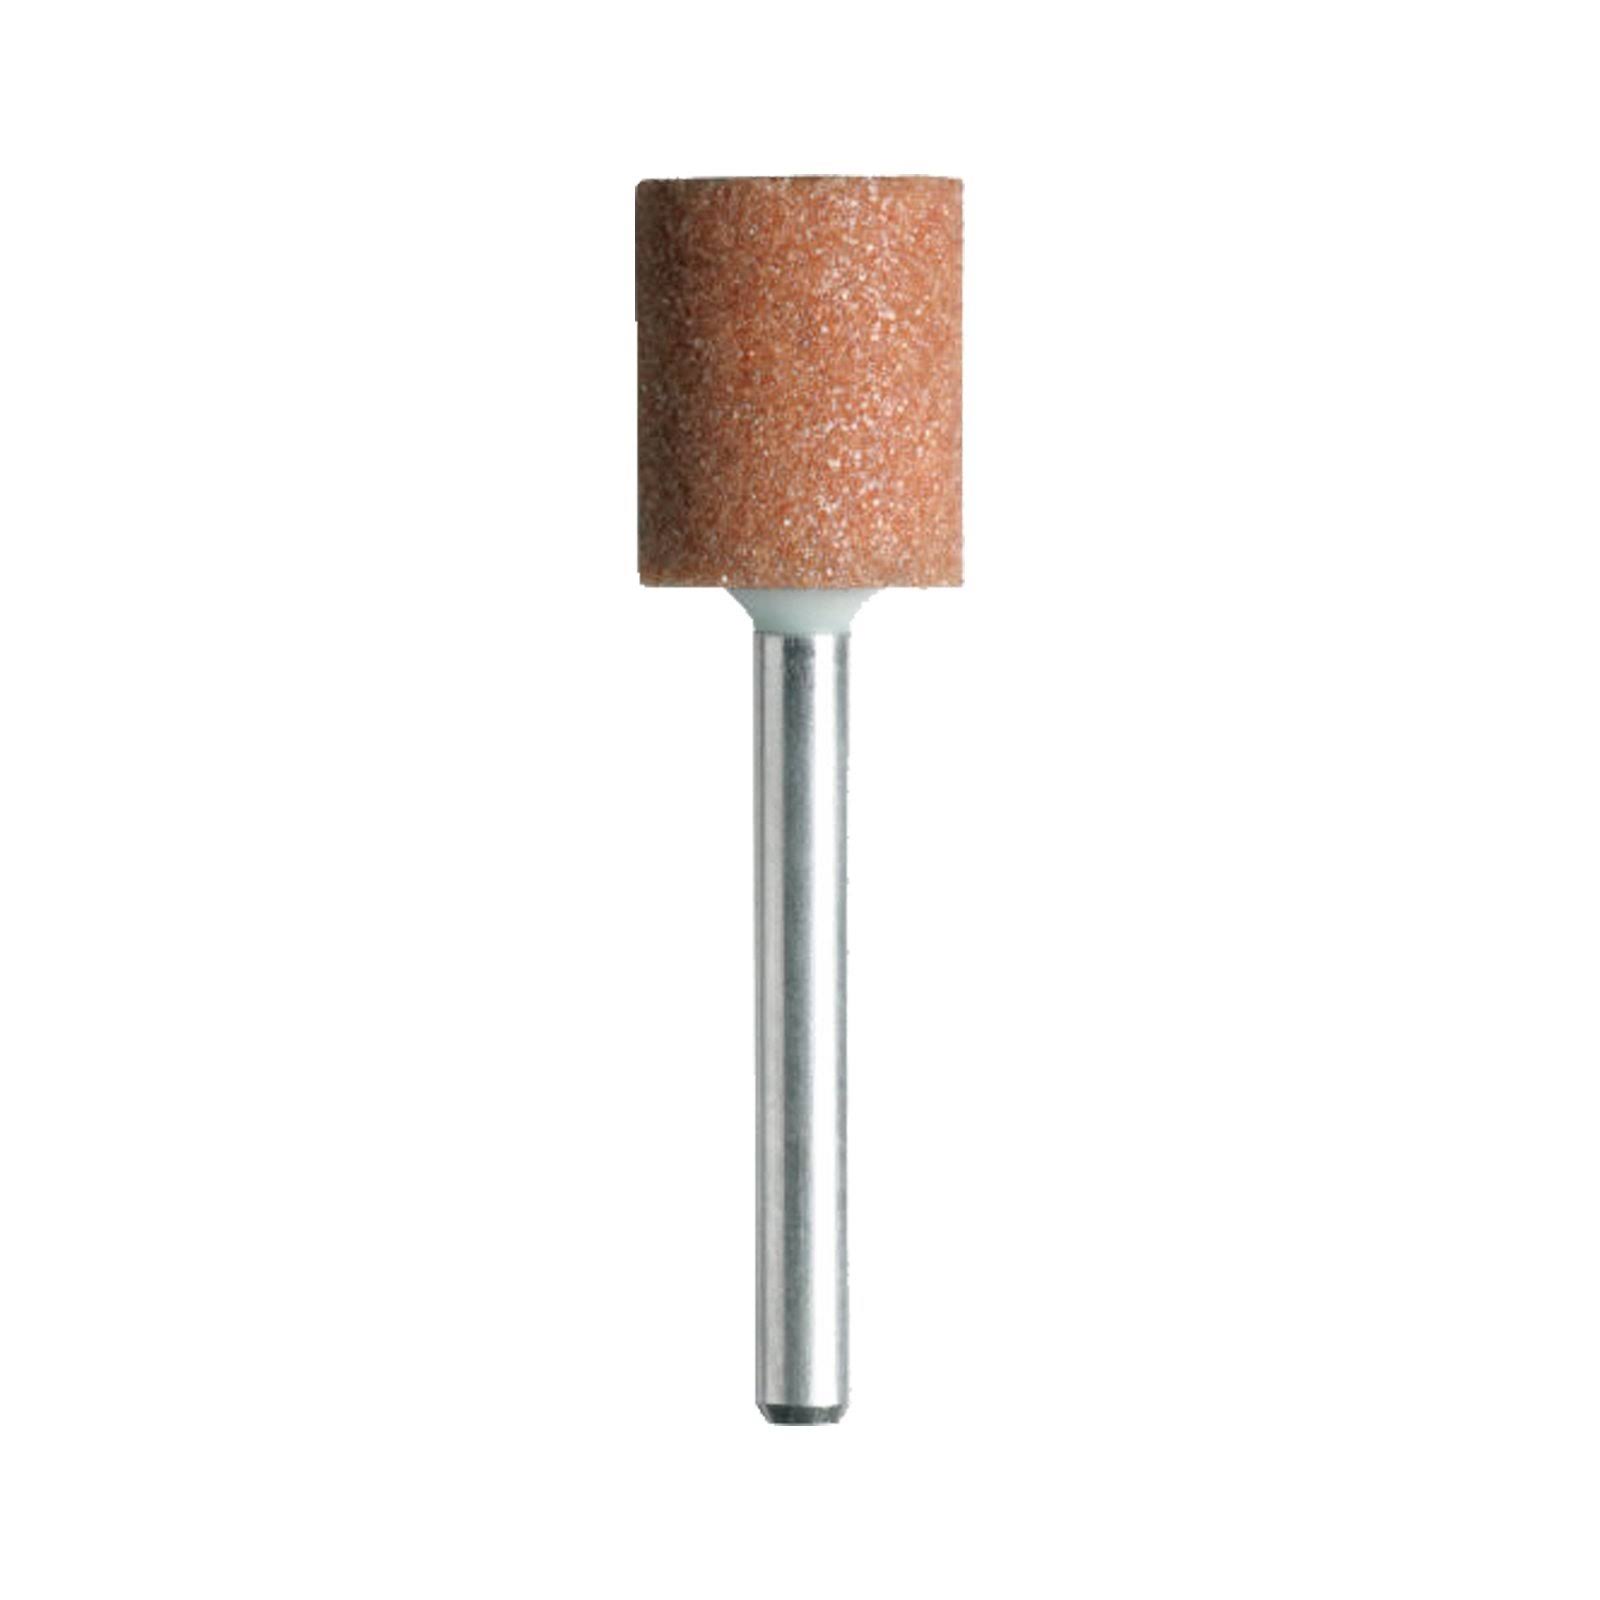 Dremel Cylinder Shaped Rotary Tool Grinding Stone - 3/8", Aluminium Oxide